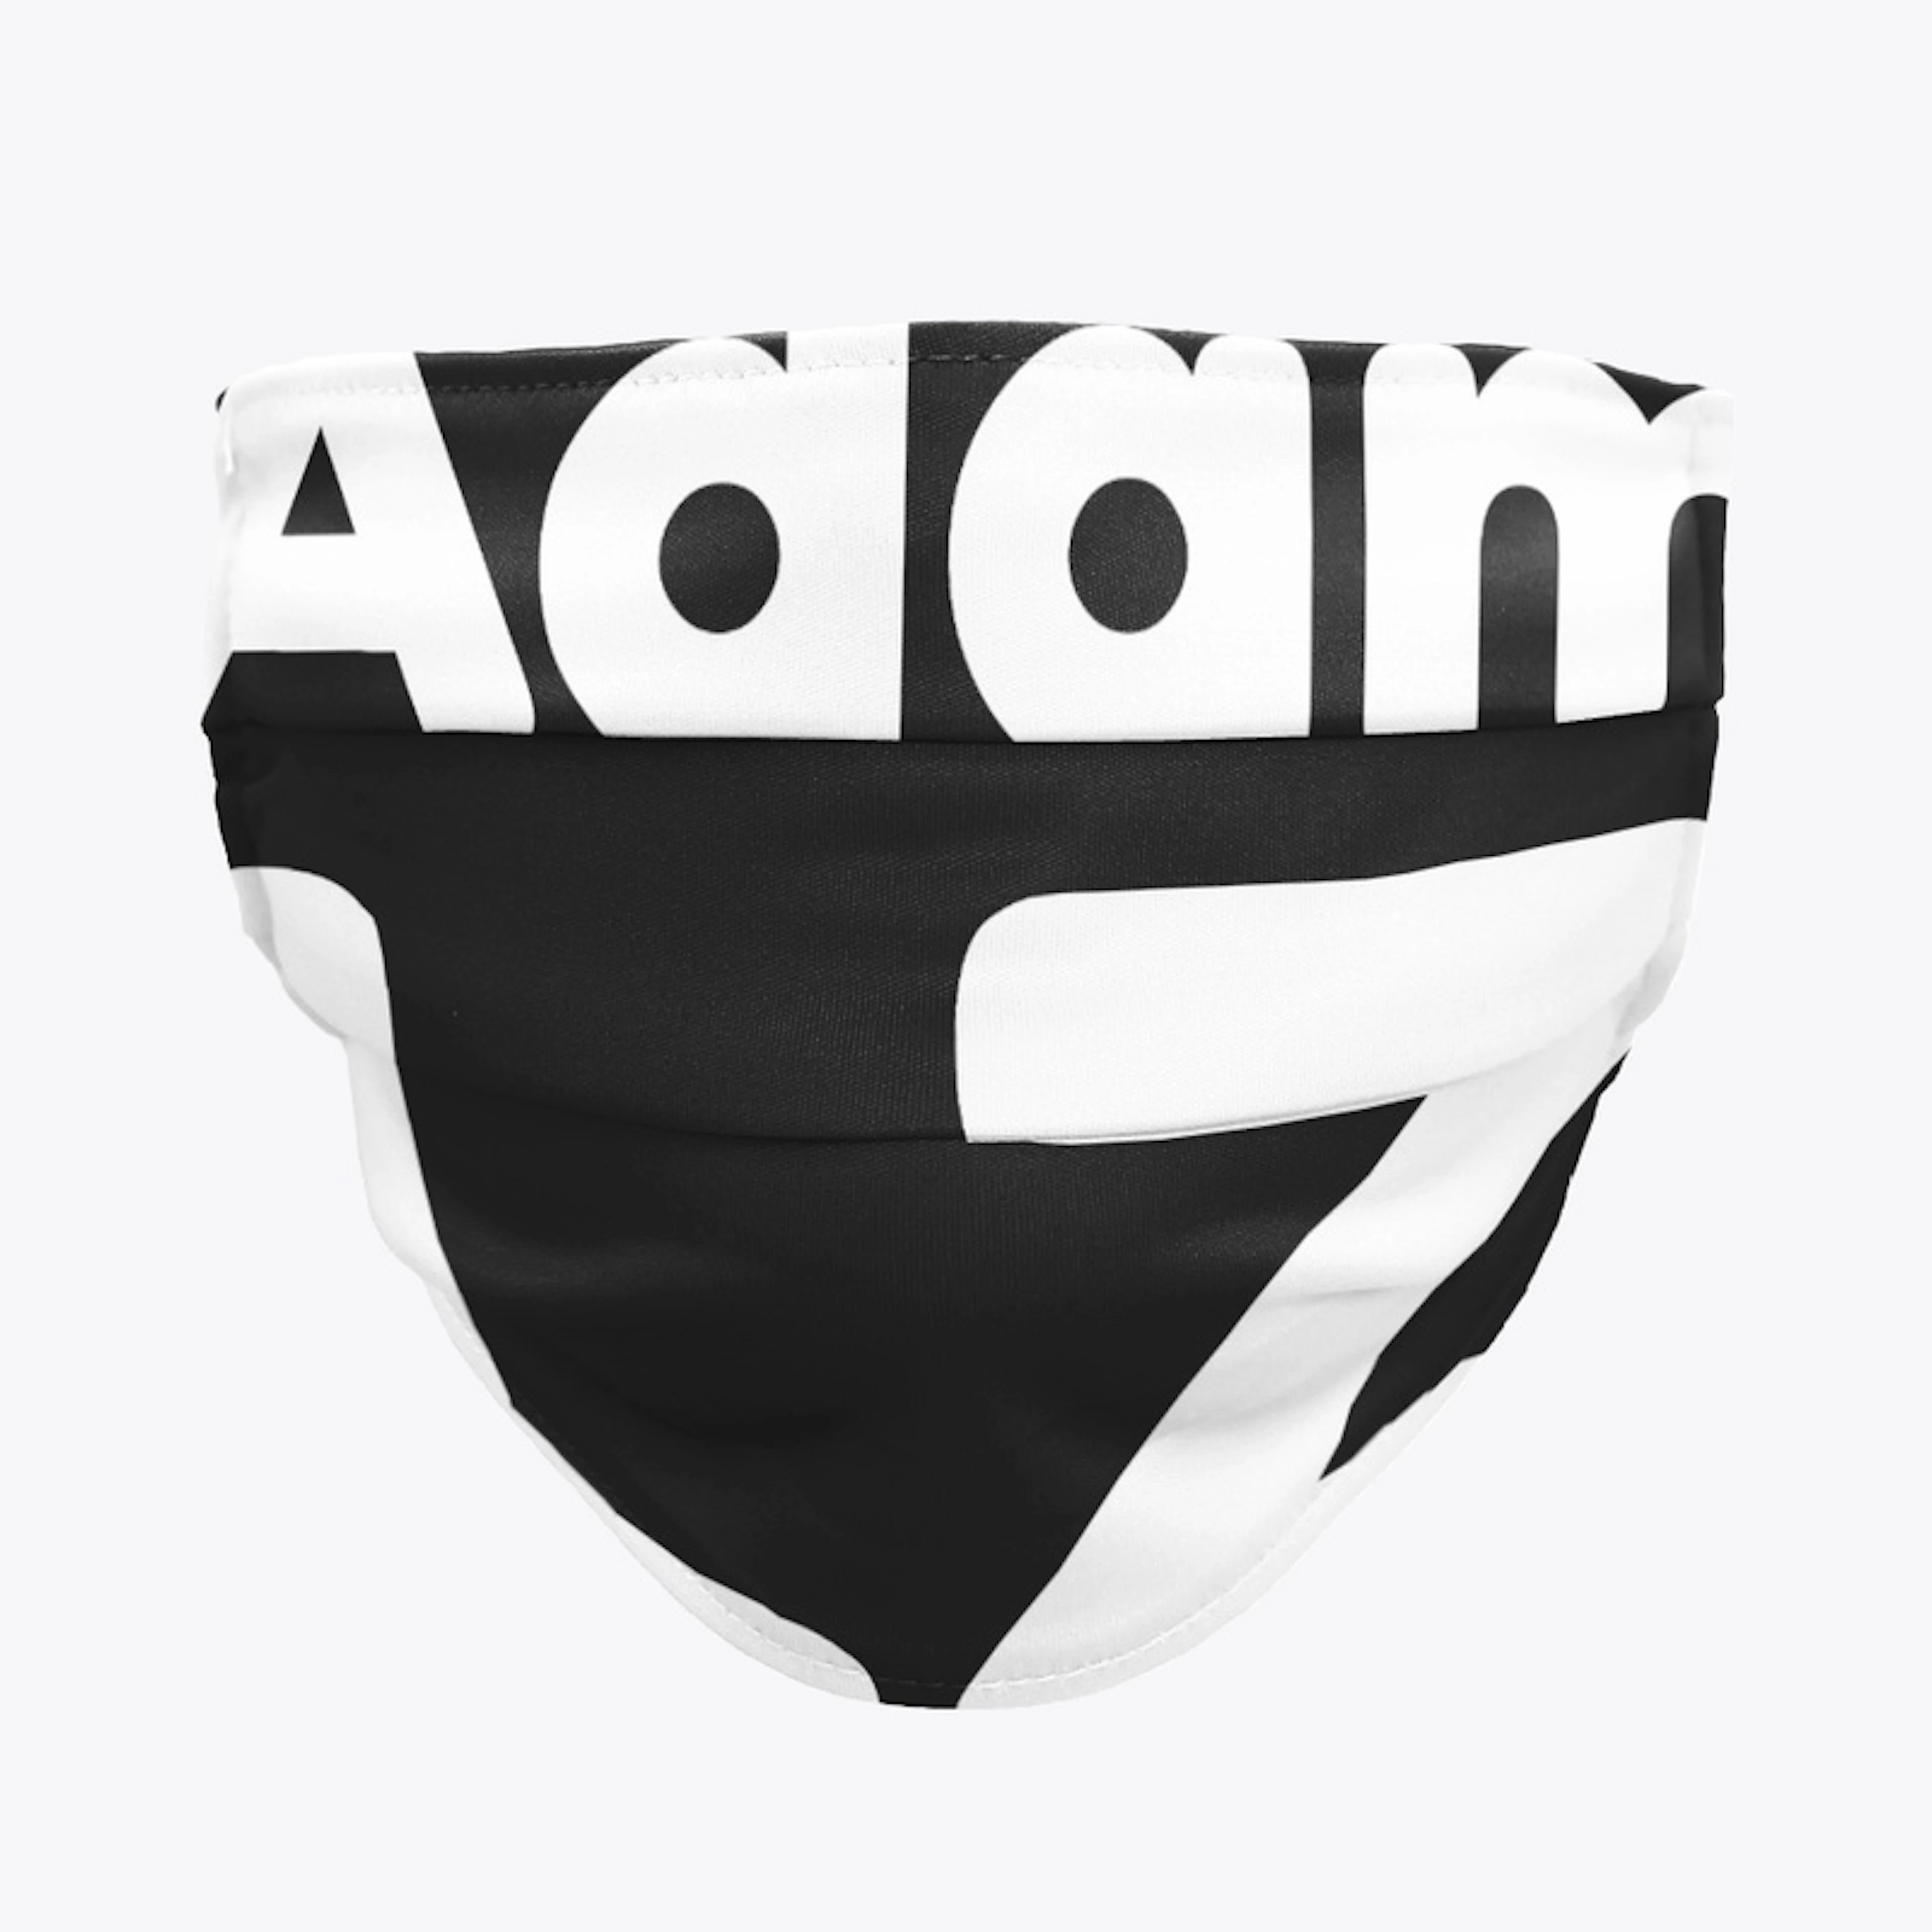 Adam LZ Merch Logo